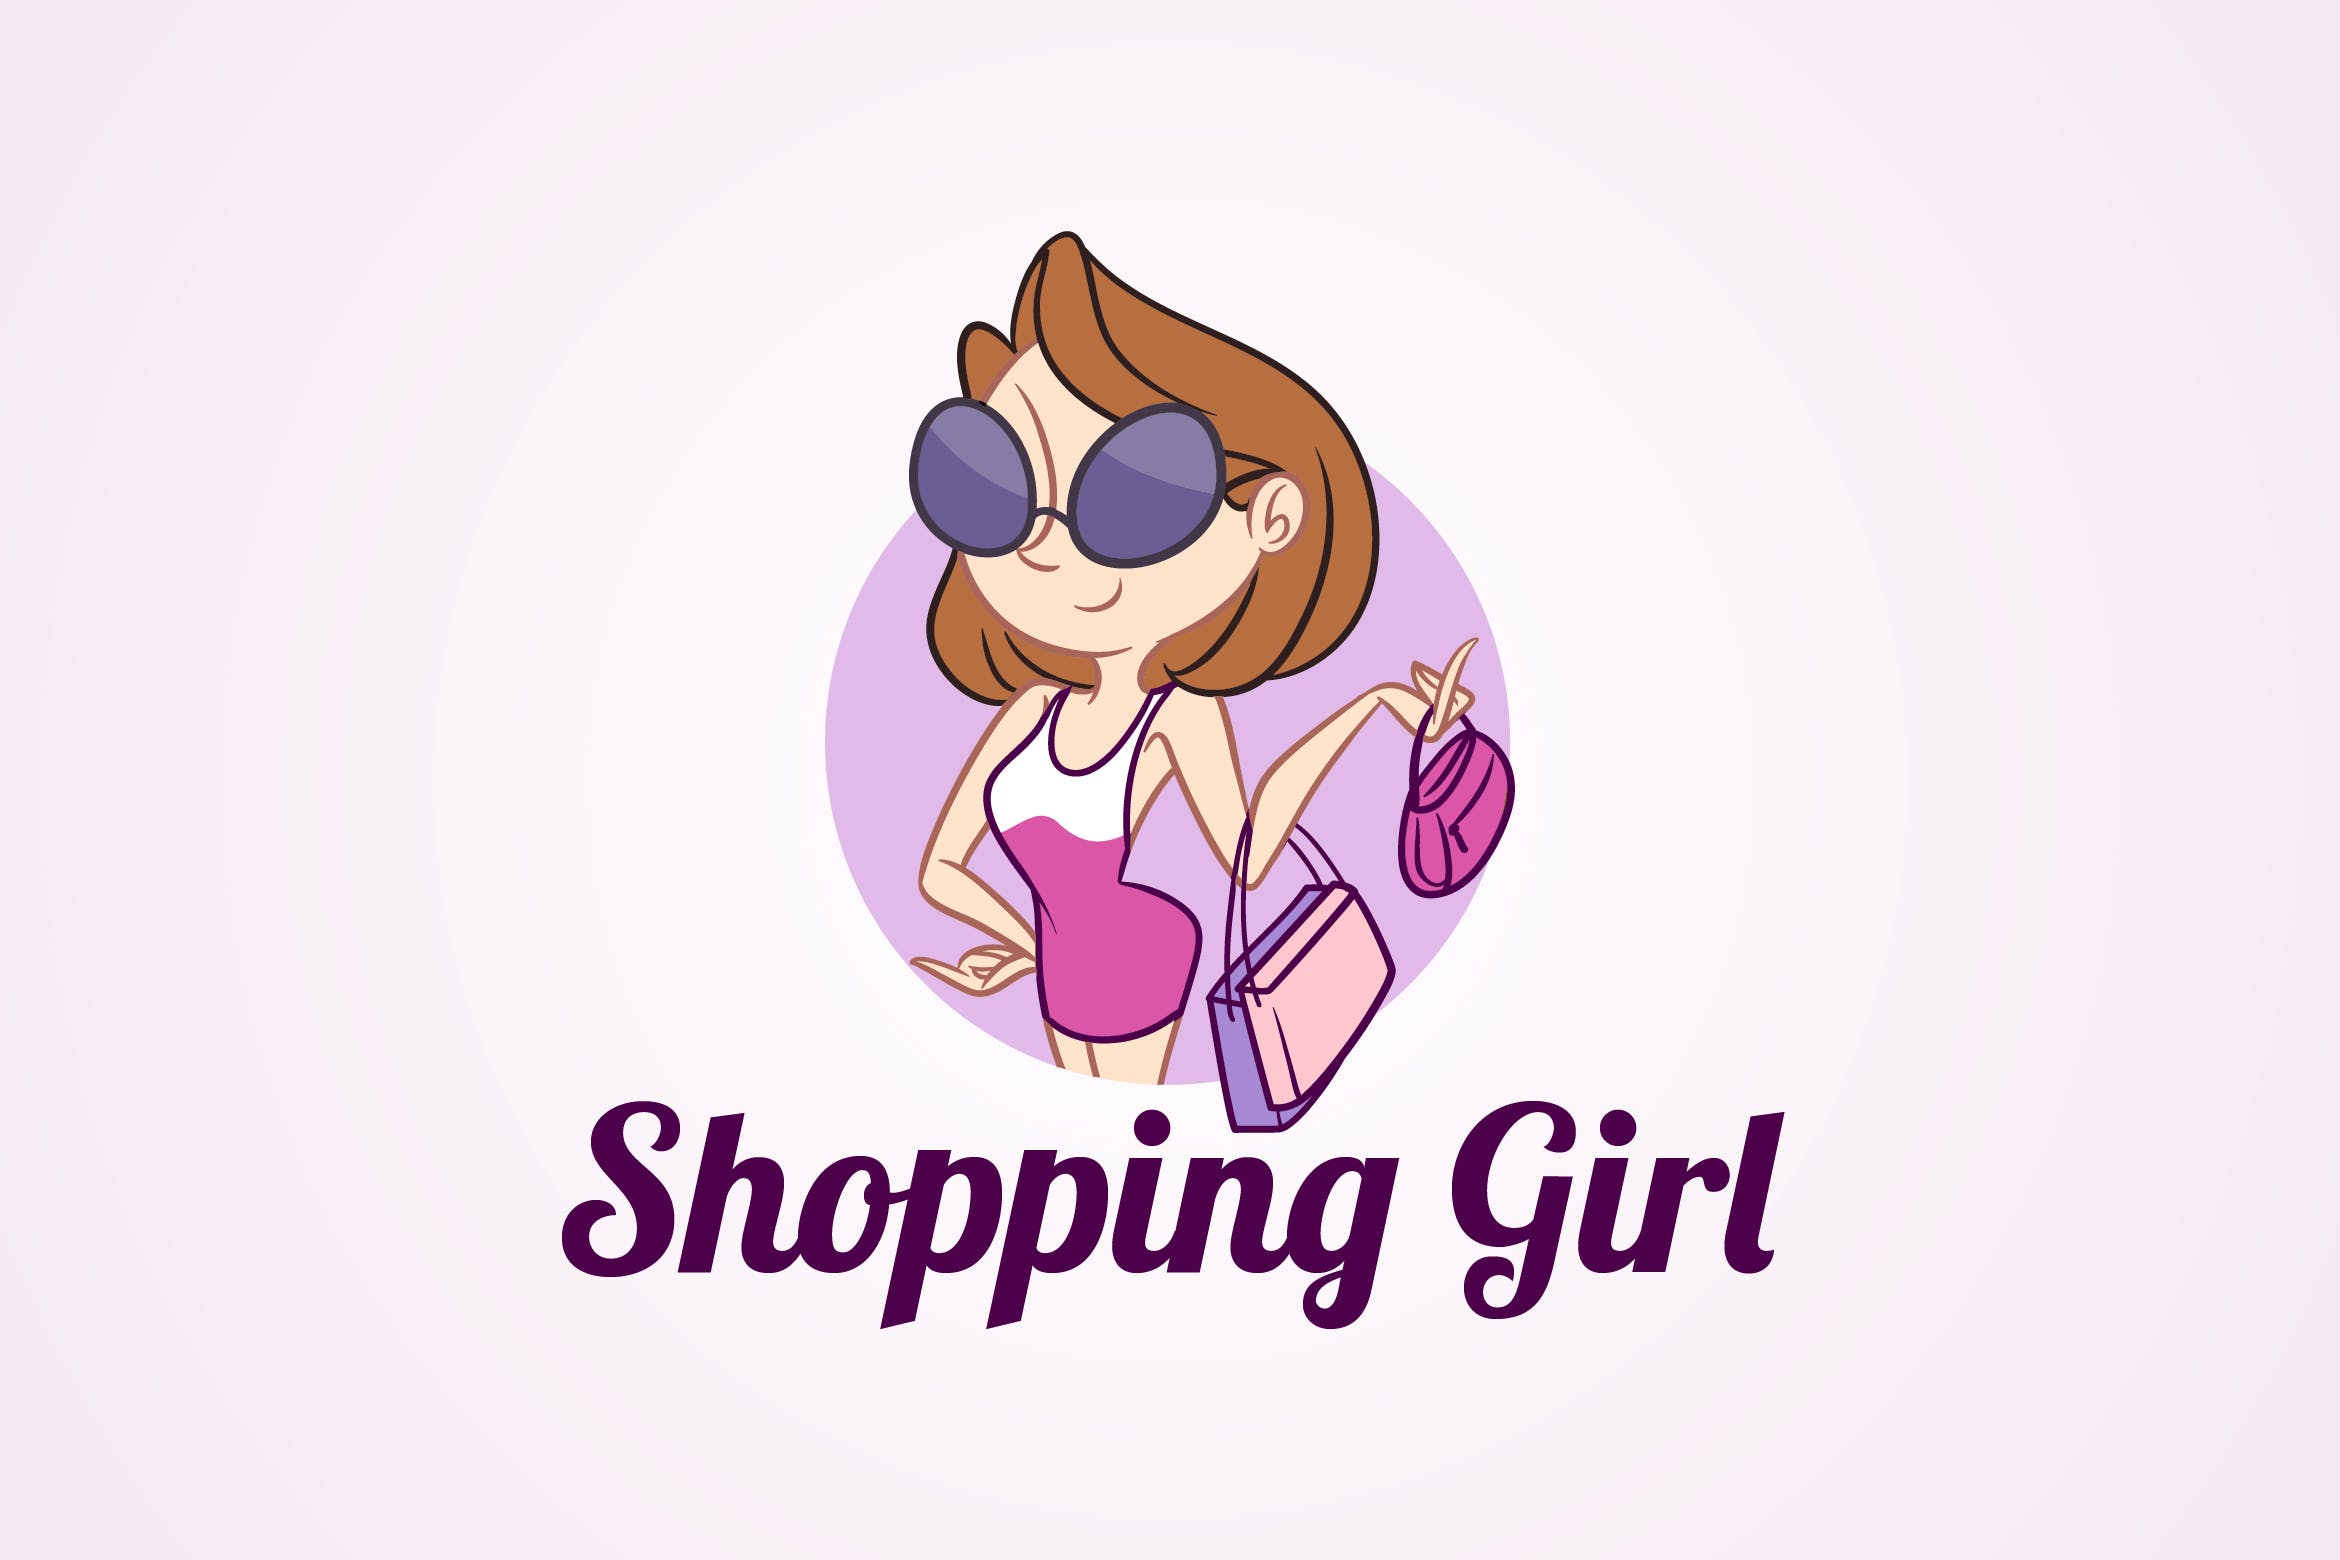 时尚购物女郎形象Logo设计模板 Shopping Girl – Fashion Mascot Logo插图